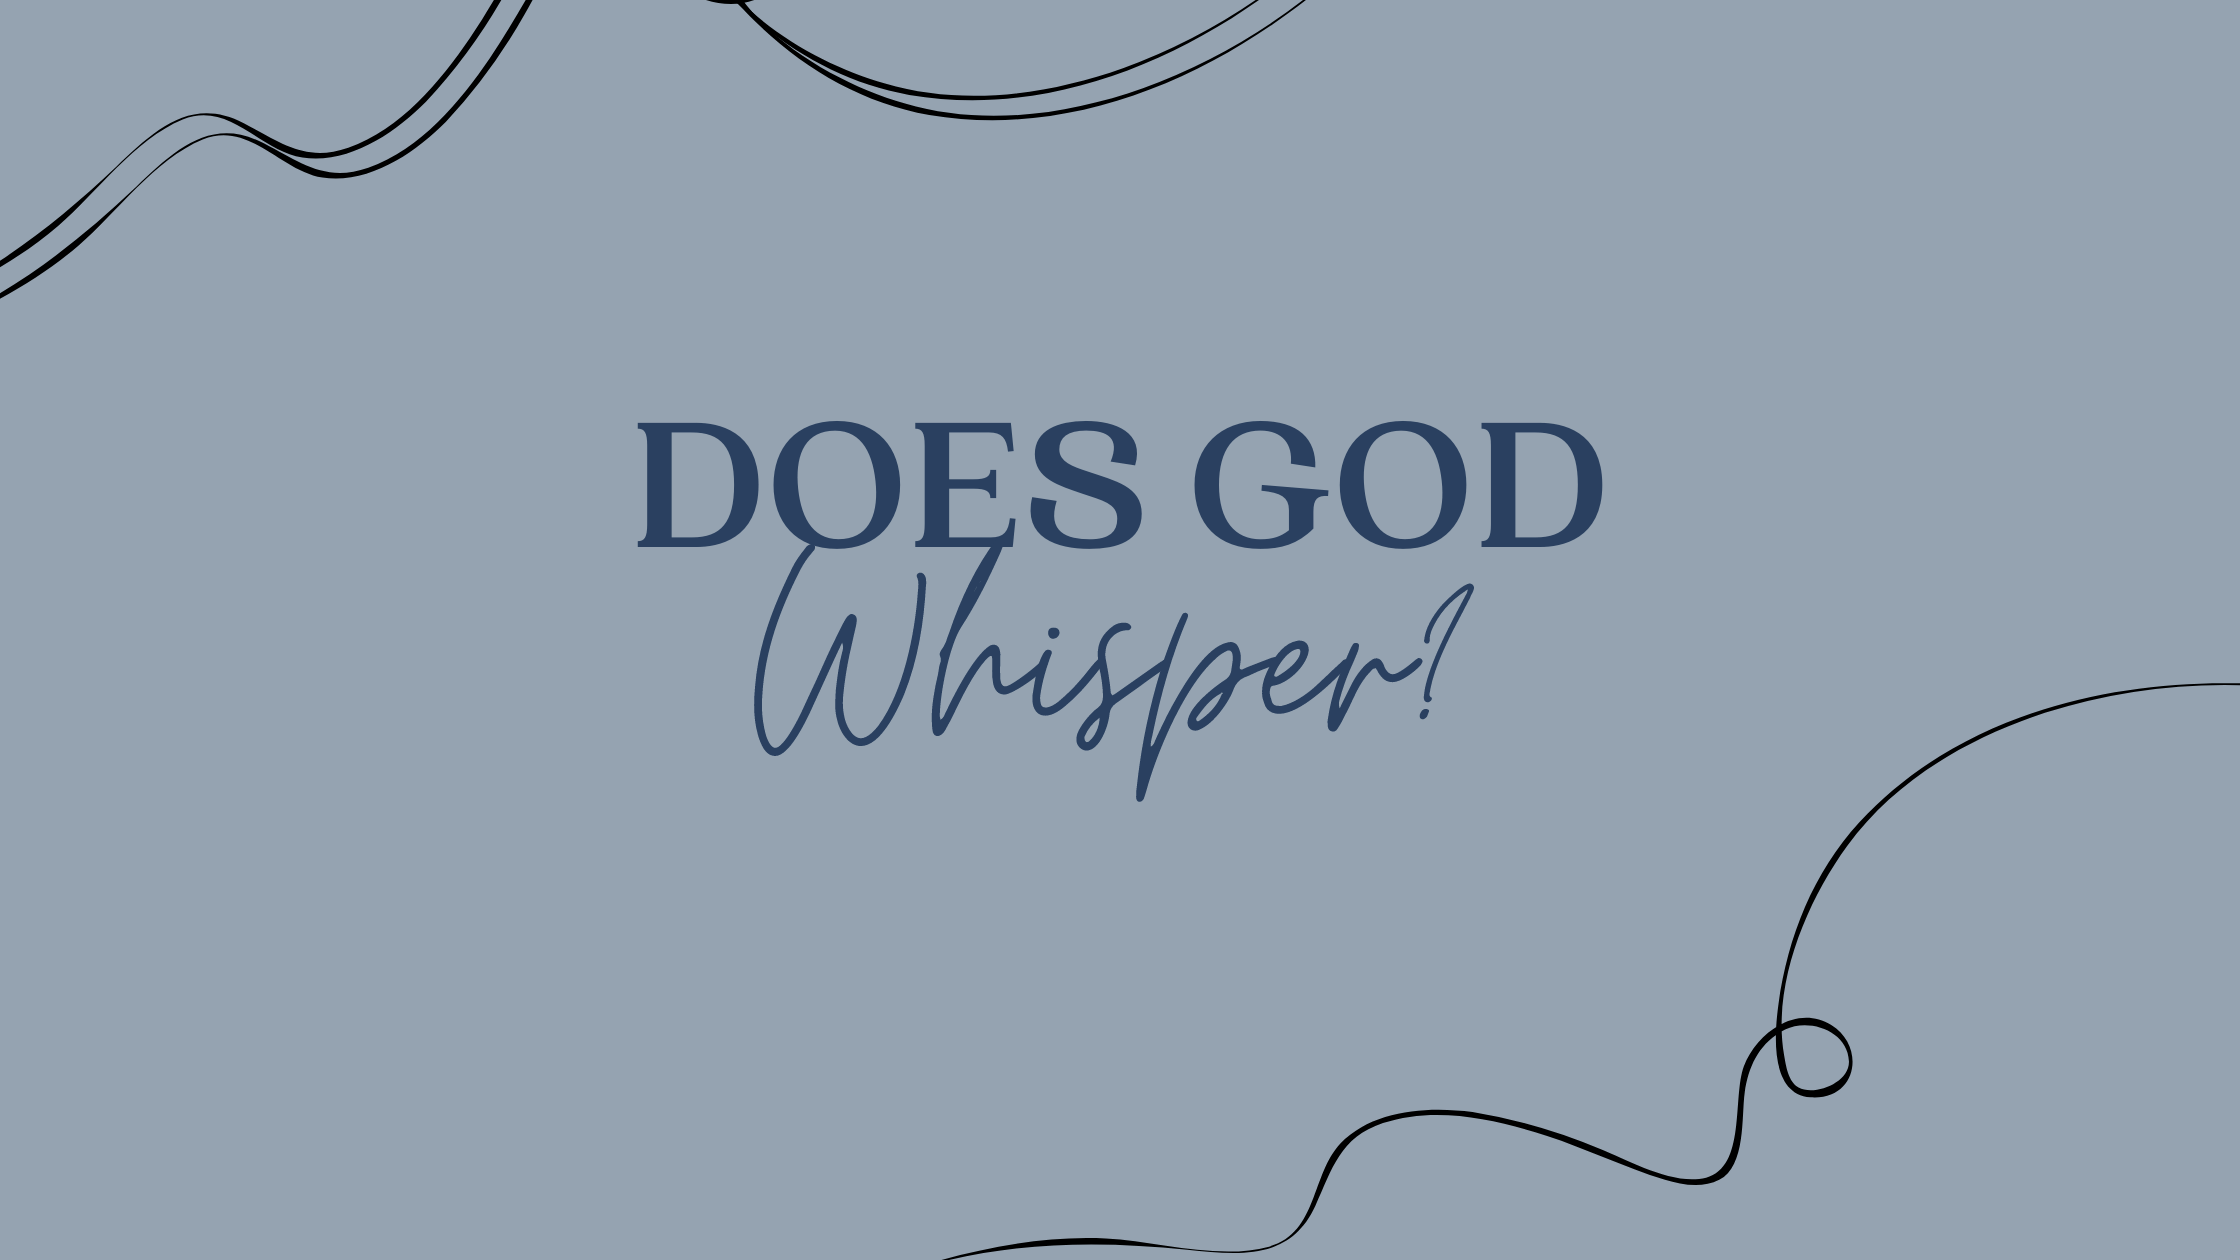 Does God whisper?